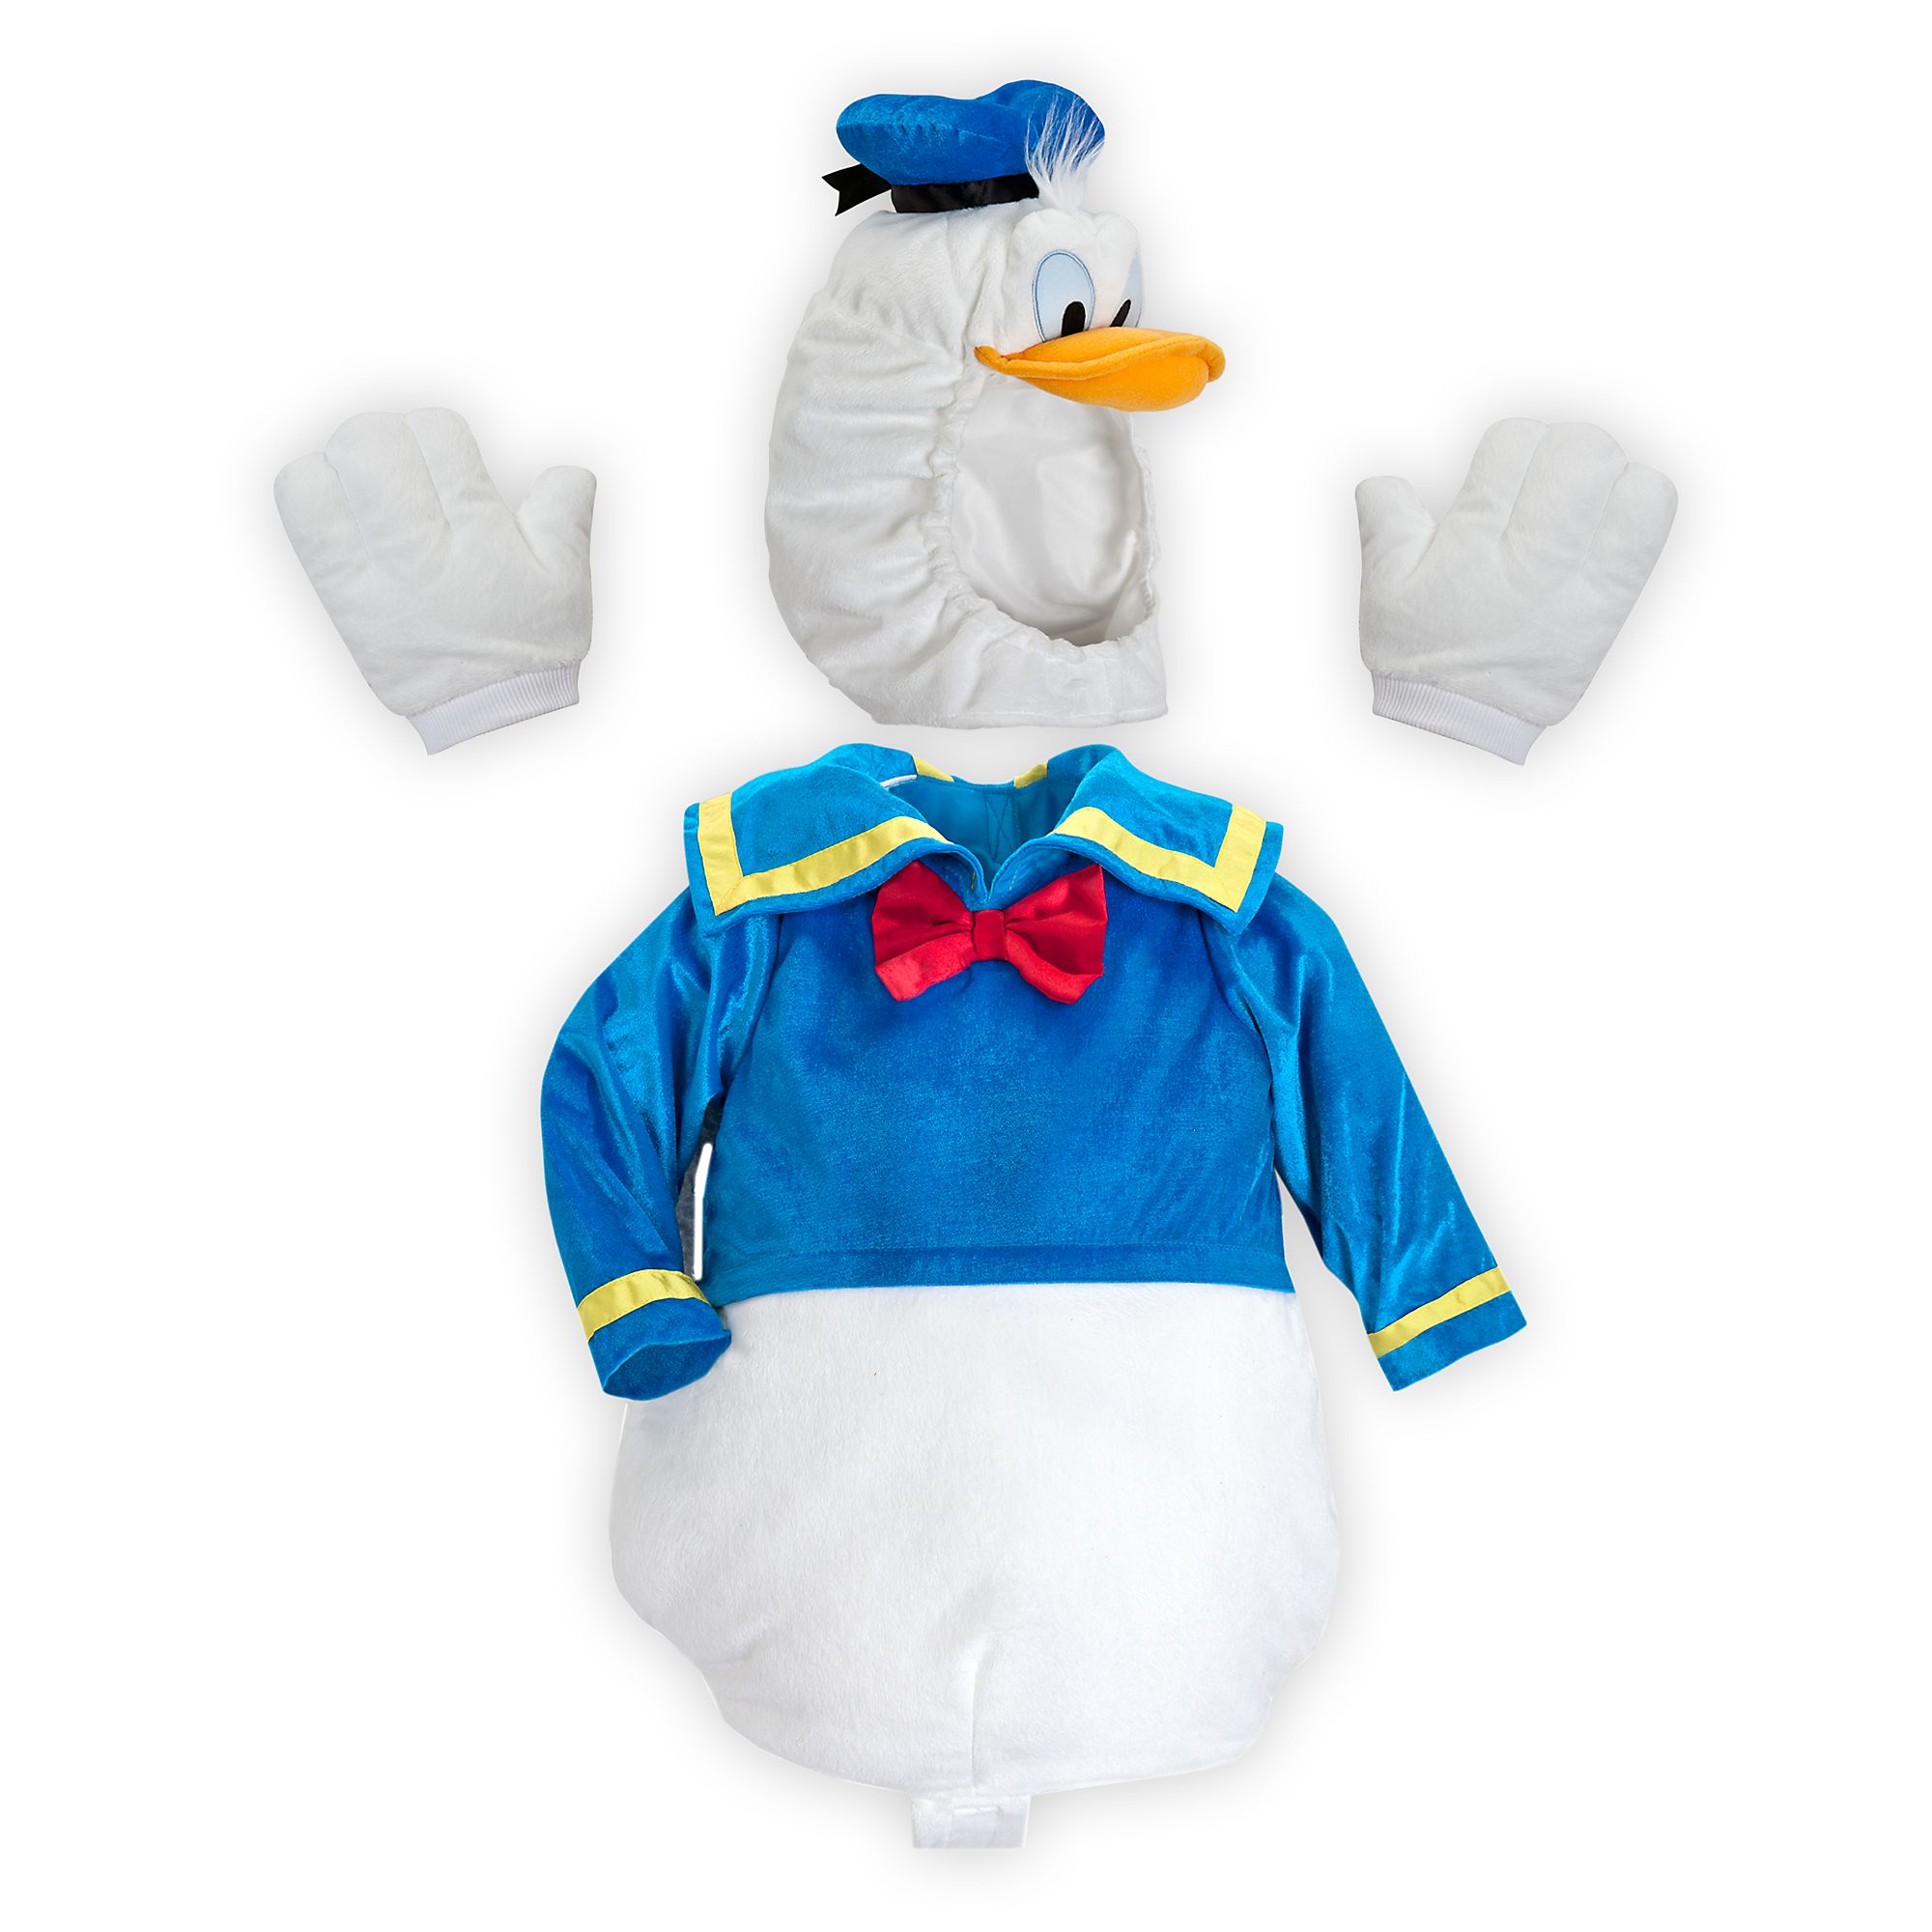 Disney Store Donald Duck Baby Costum Body Suit